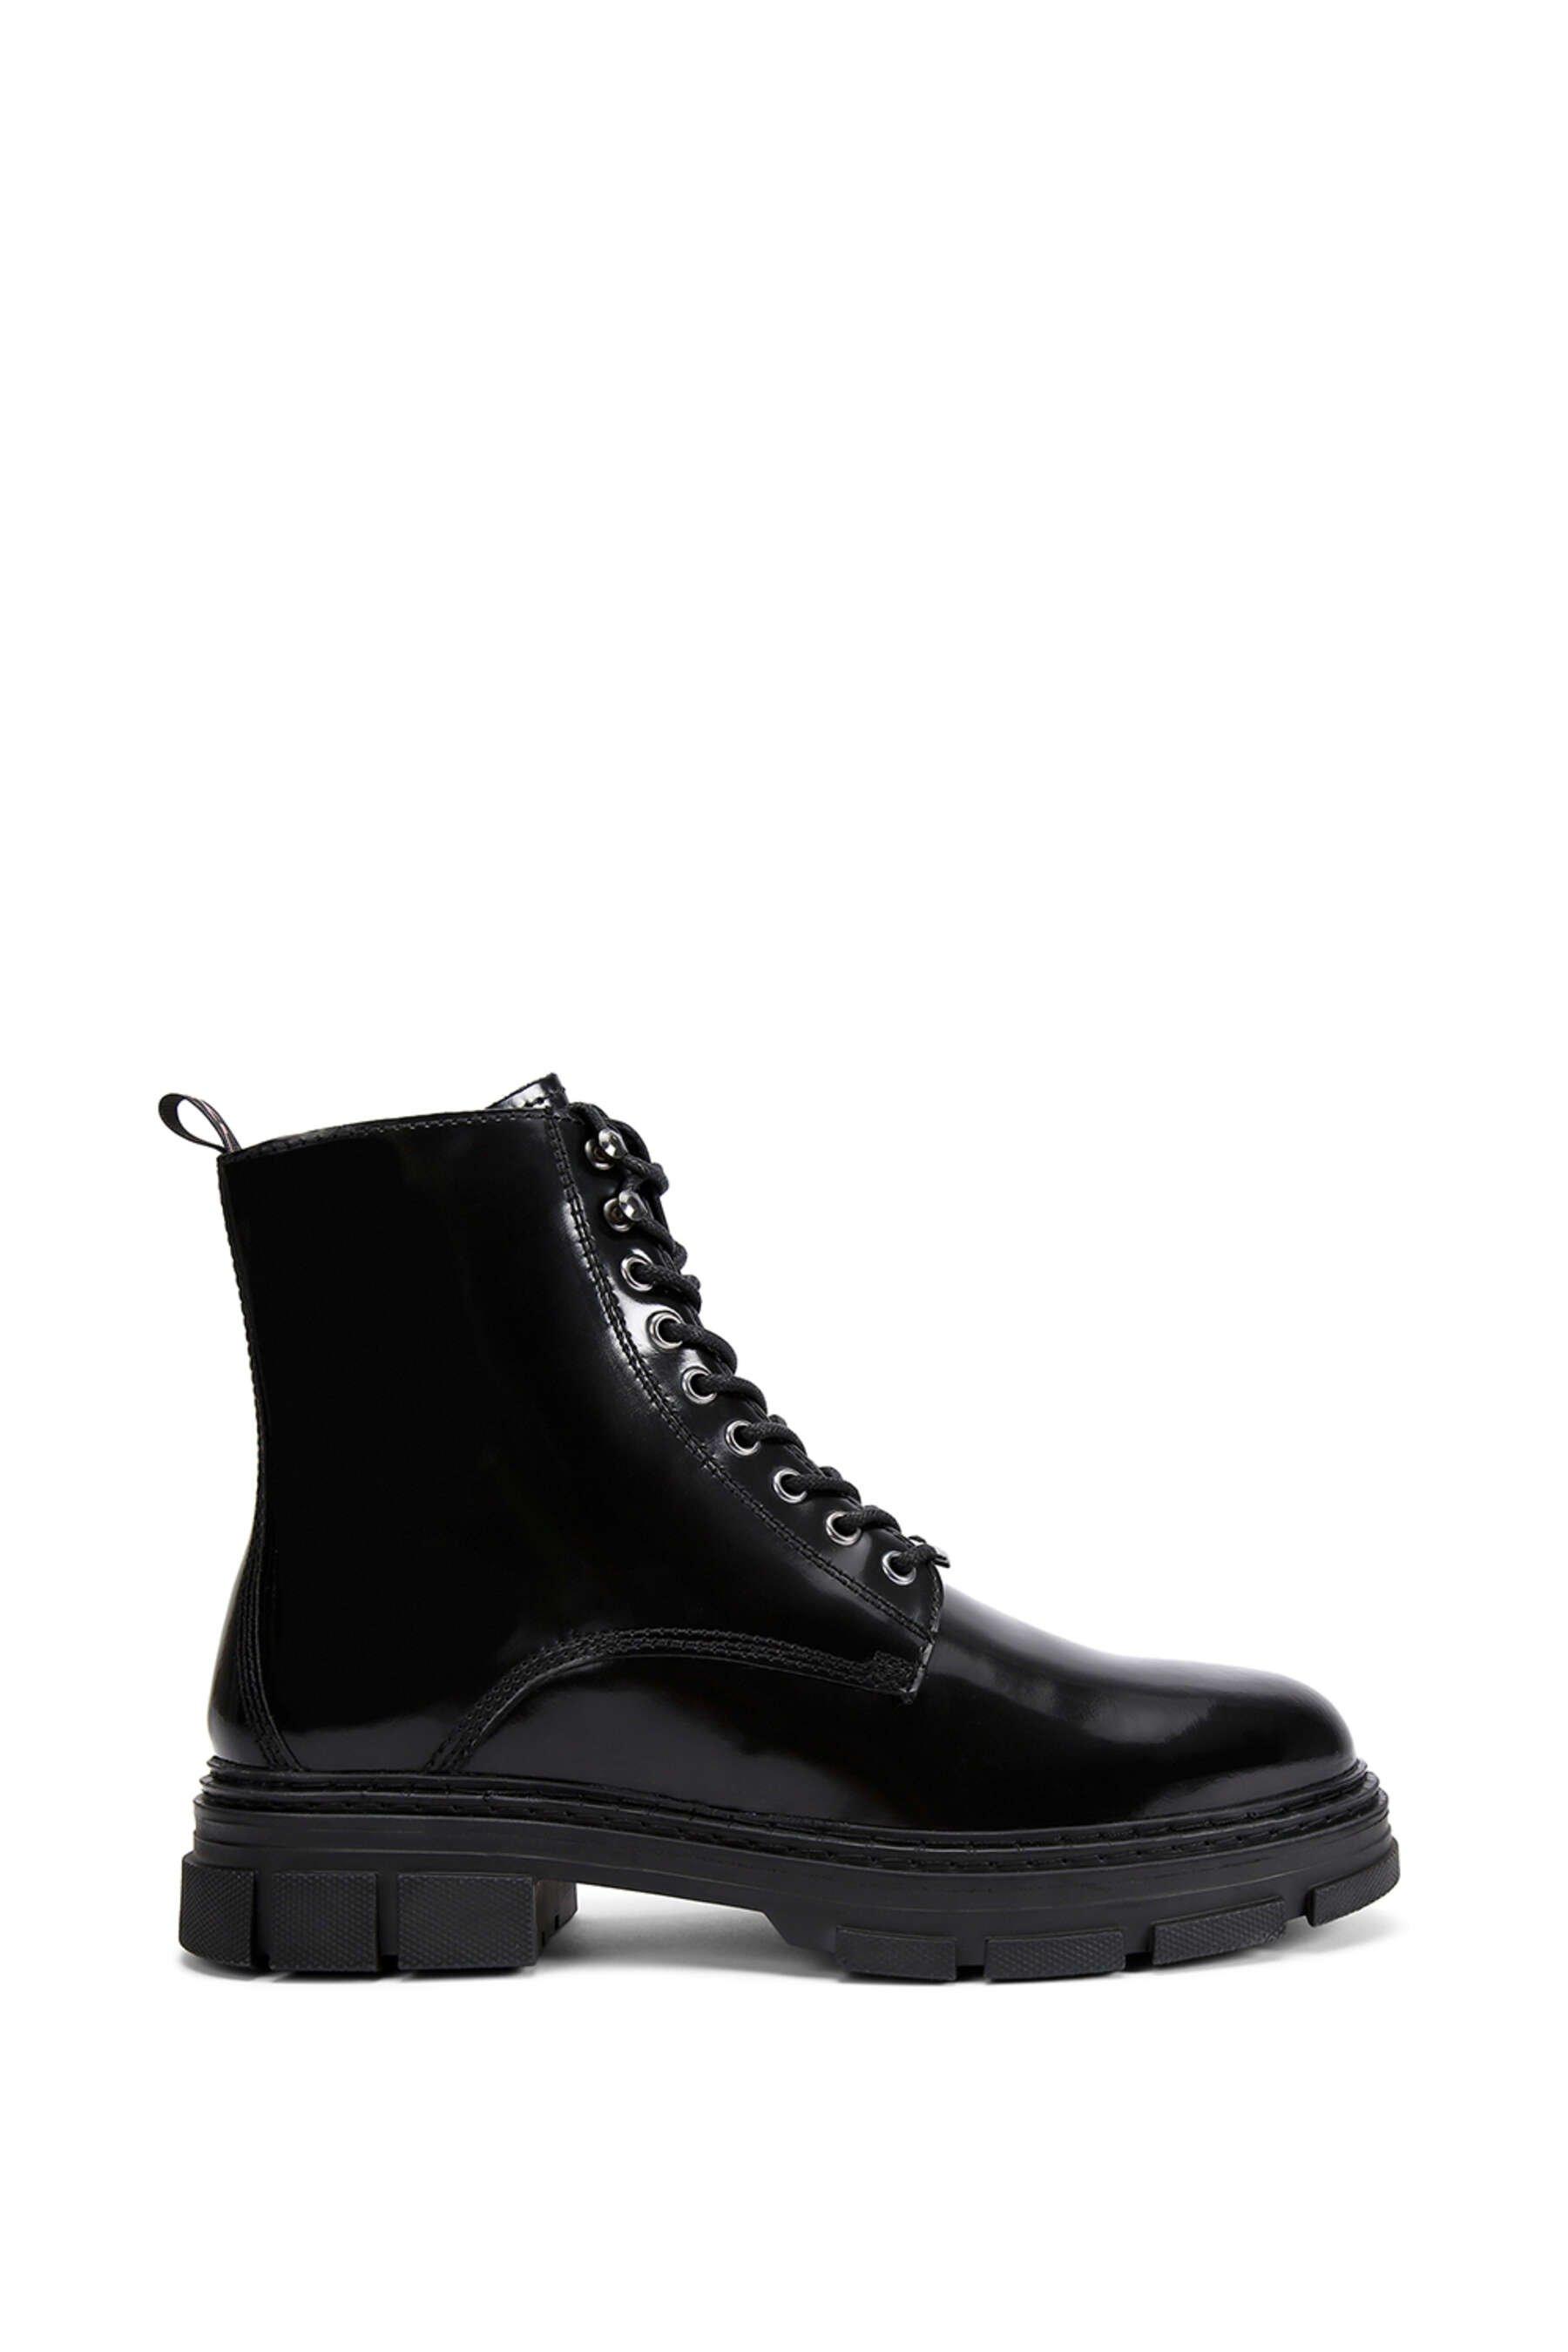 KG Kurt Geiger 'Danger' Leather Boots | Debenhams